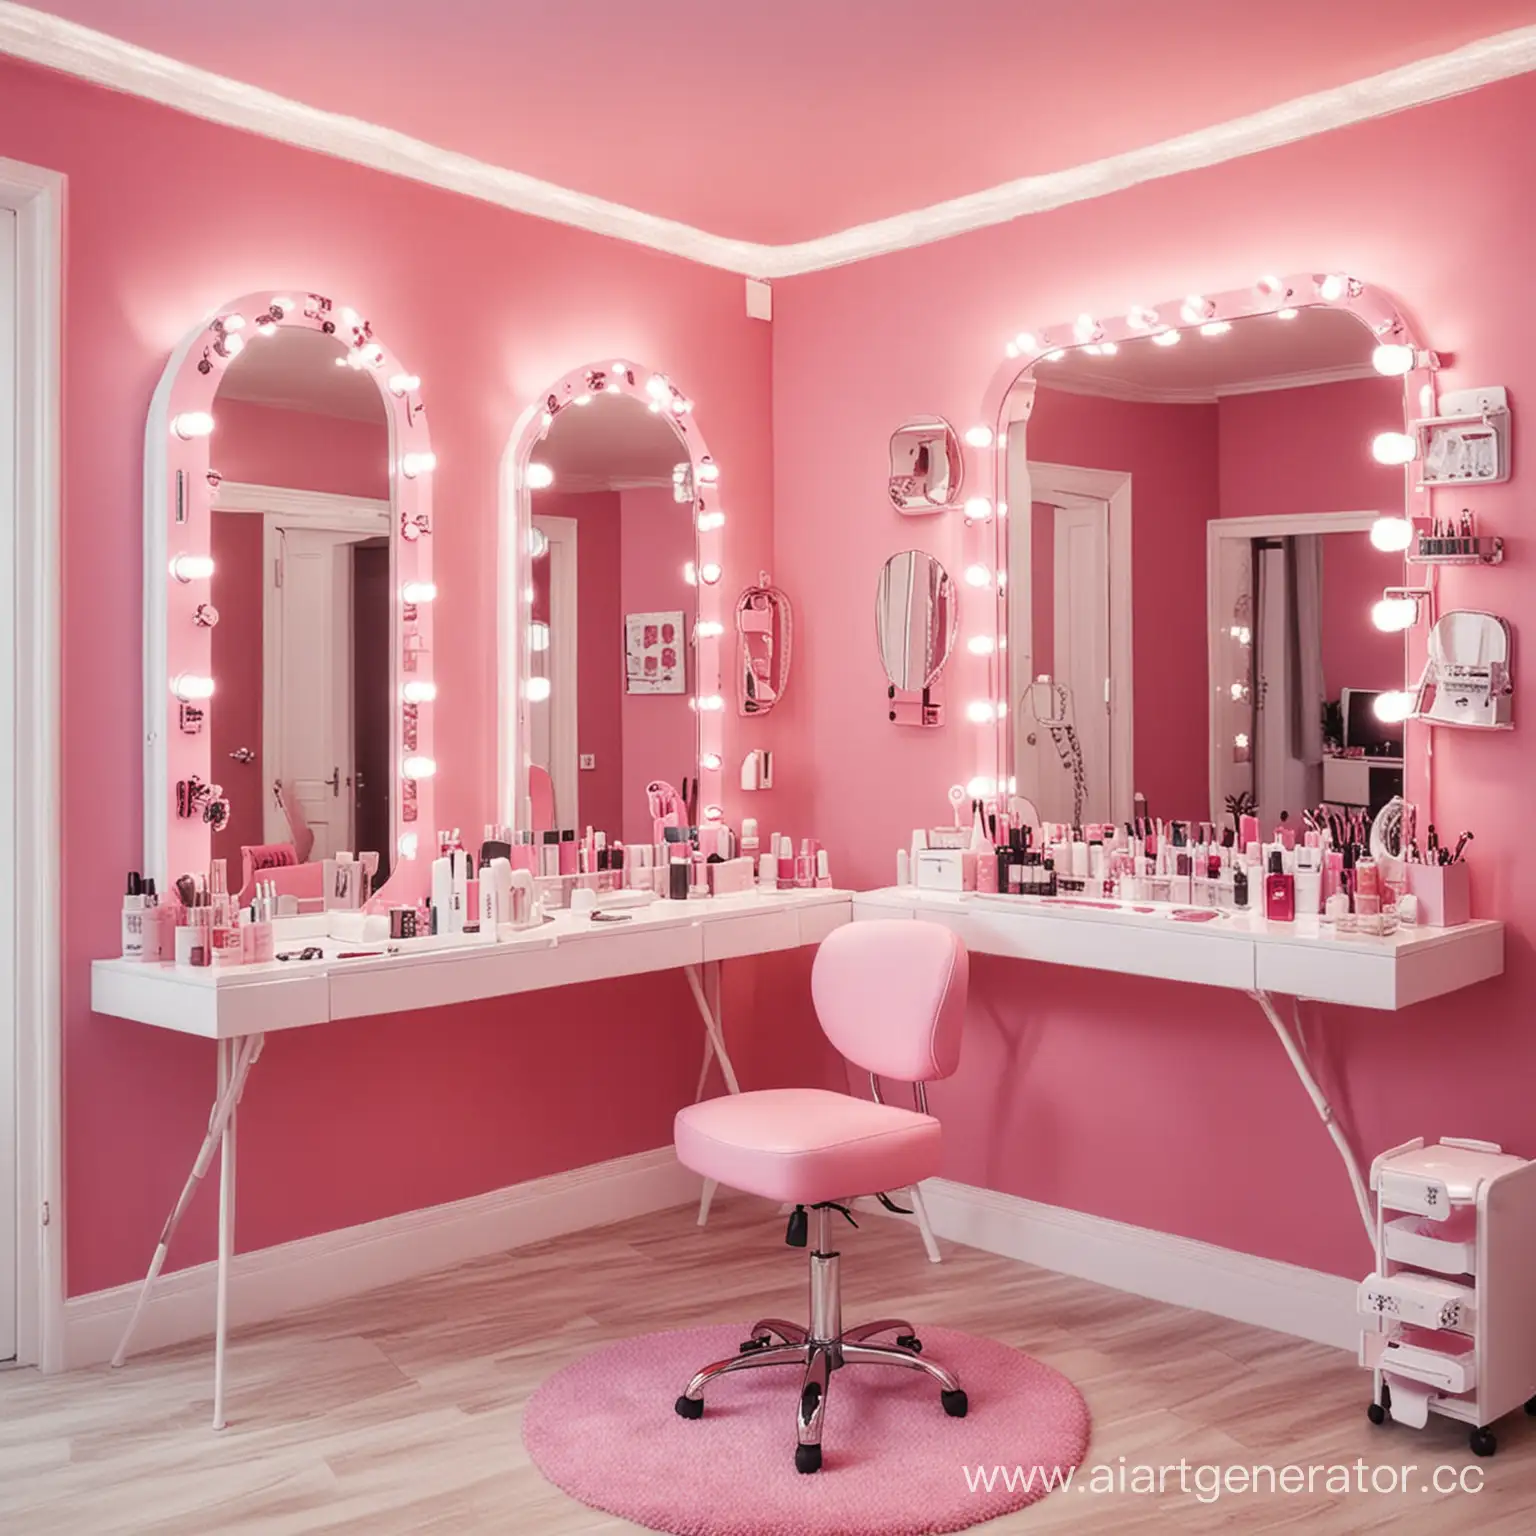 Создай салон красоты в розовом цвете, где мастер делает маникюр молодой девушке